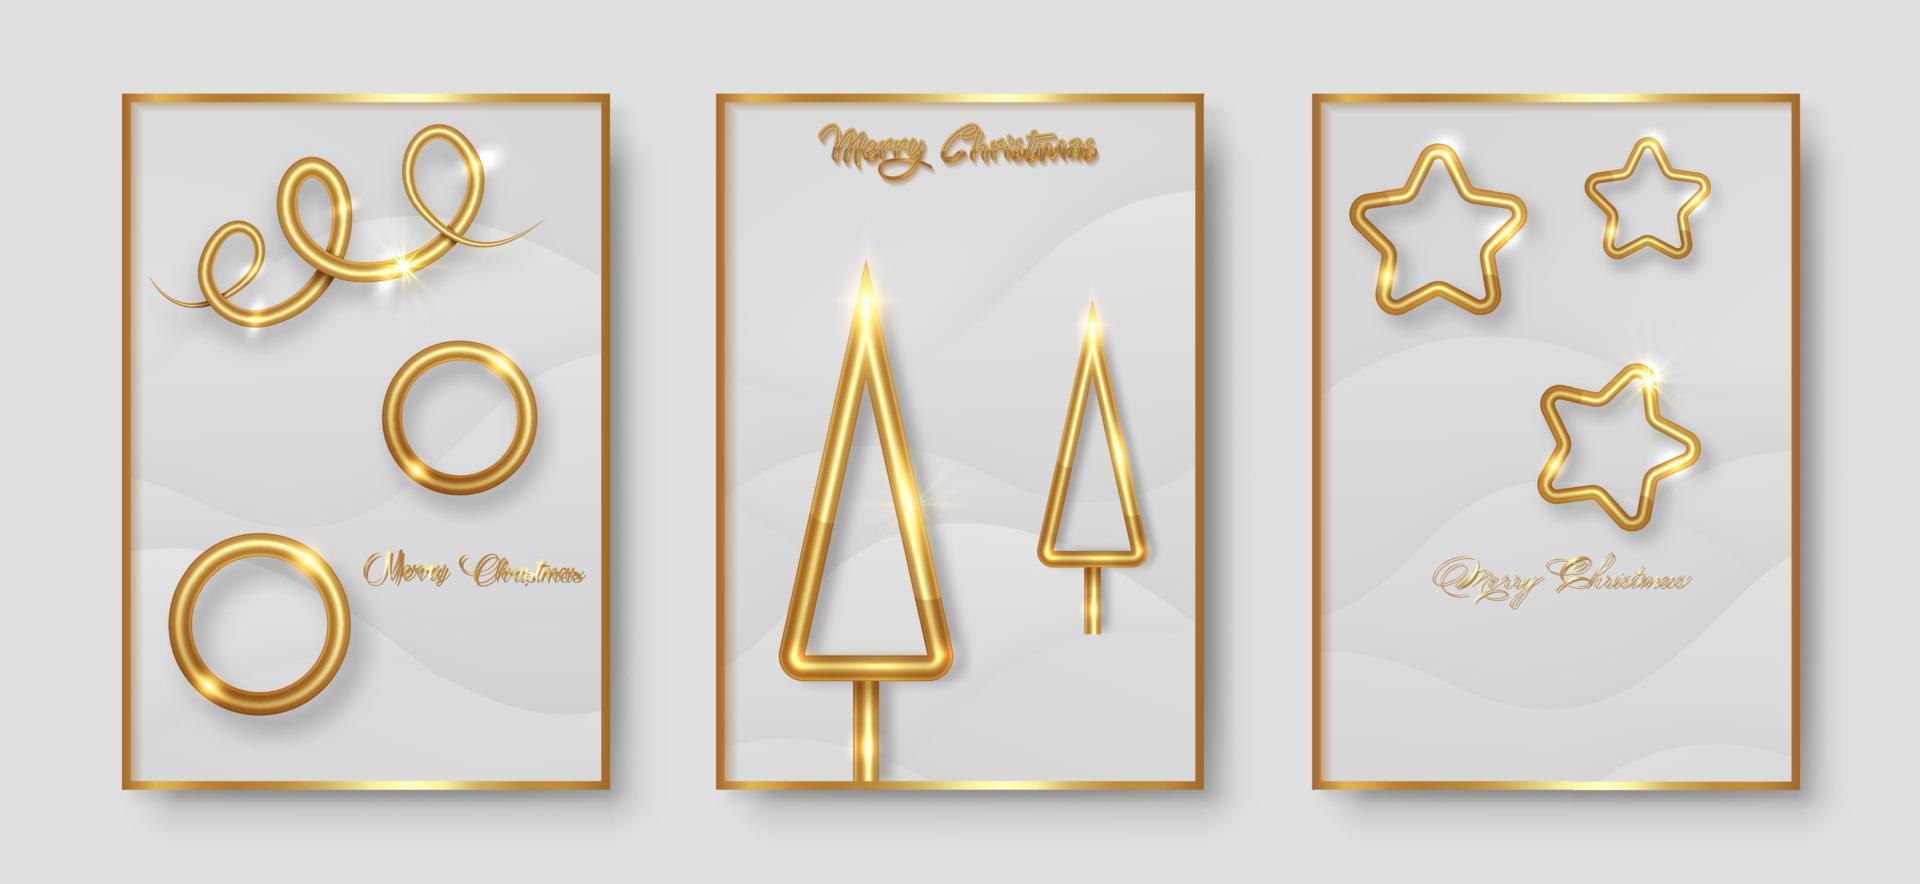 poner tarjetas feliz navidad textura dorada, elementos dorados de lujo, fondo de corte de papel blanco para calendario y tarjeta de saludos o invitaciones navideñas de invierno con decoraciones geométricas vector